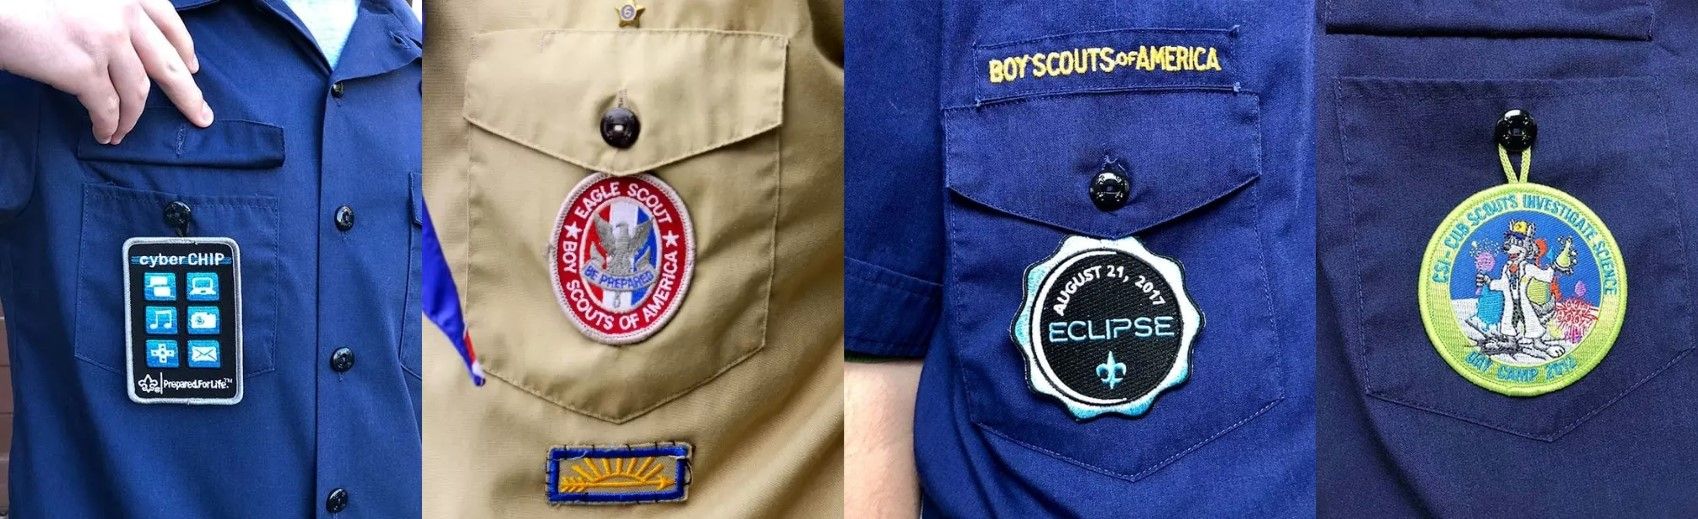 Mettez en valeur votre parcours et vos compétences avec fierté avec des badges soigneusement disposés sur votre uniforme de scout.